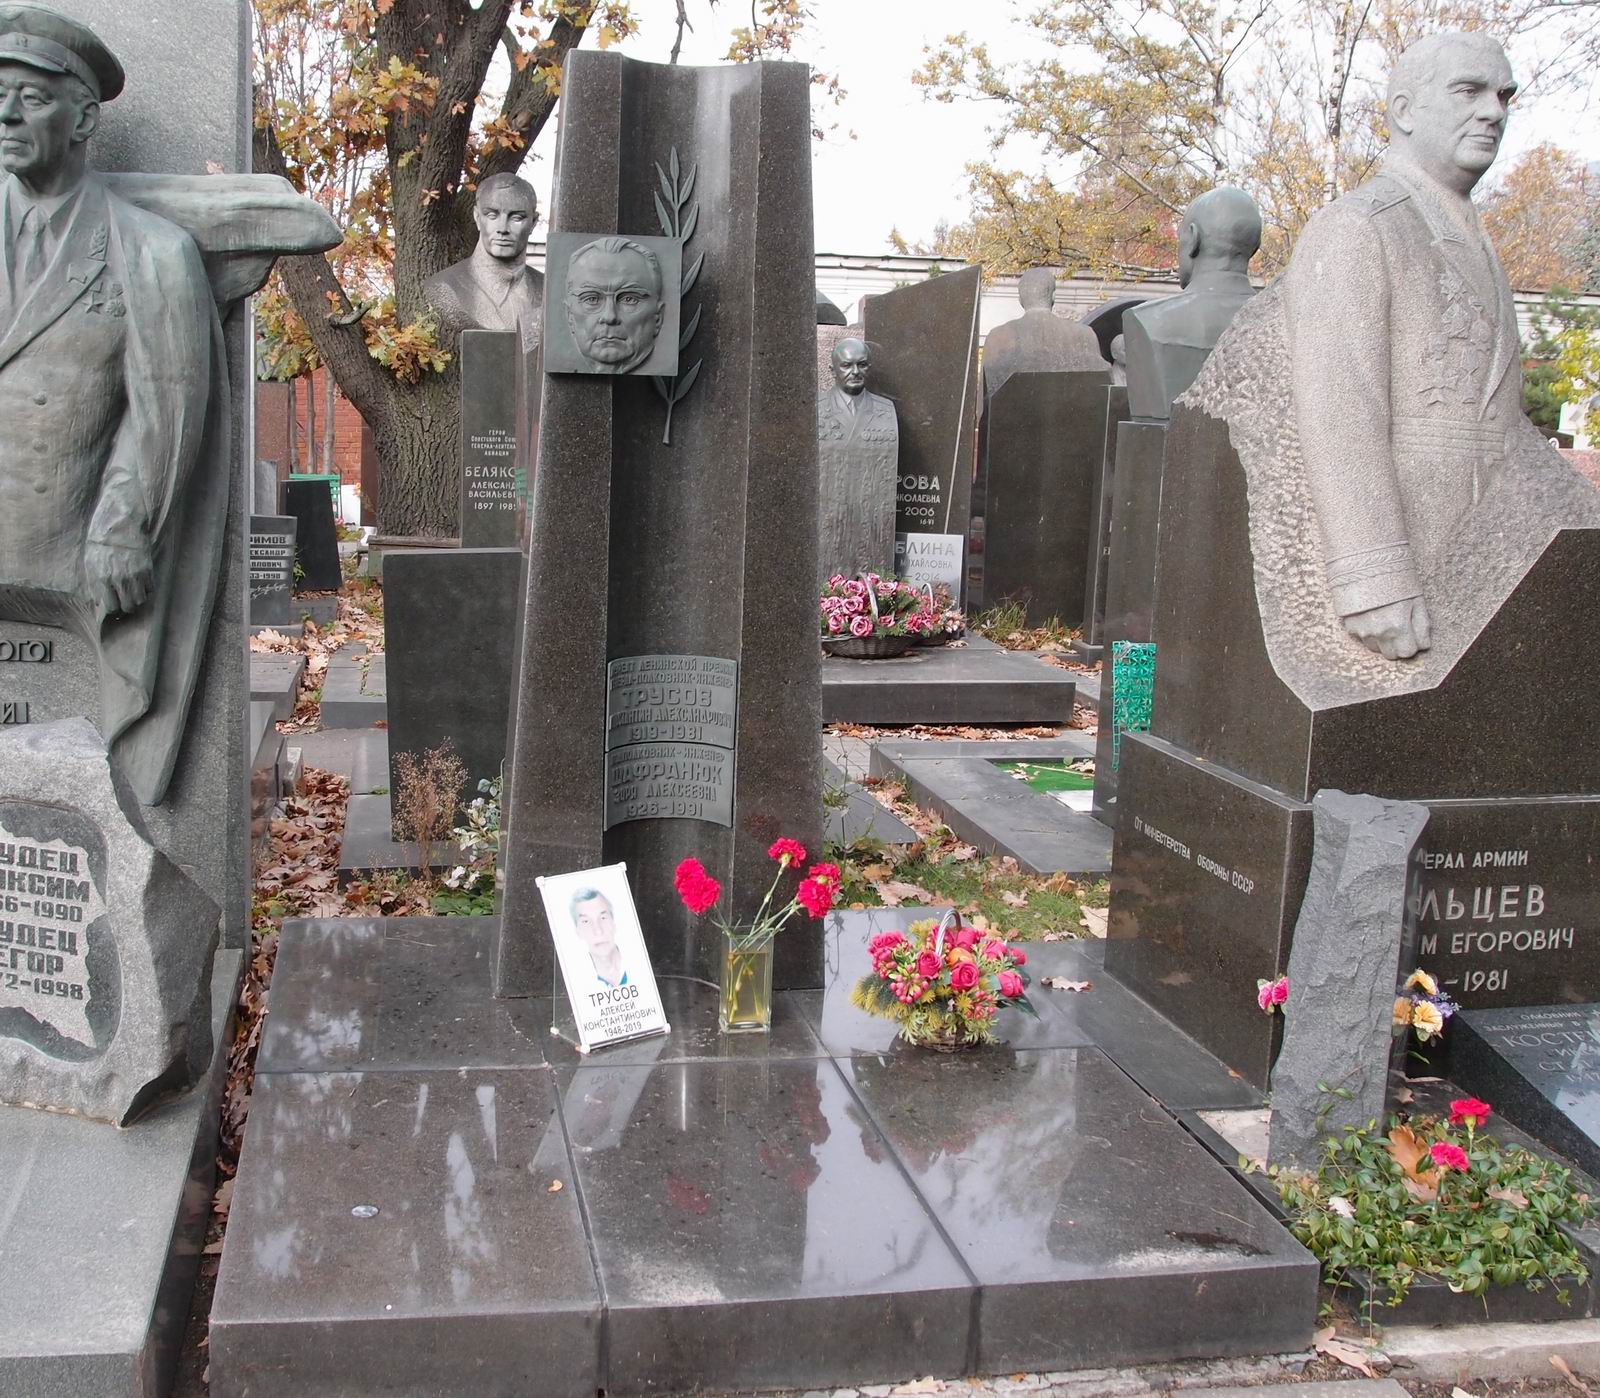 Памятник на могиле Трусова К.А. (1919-1981), ск. А.Врубель, арх. Е.Ефремов, на Новодевичьем кладбище (7-17-16). Нажмите левую кнопку мыши чтобы увидеть фрагмент памятника.